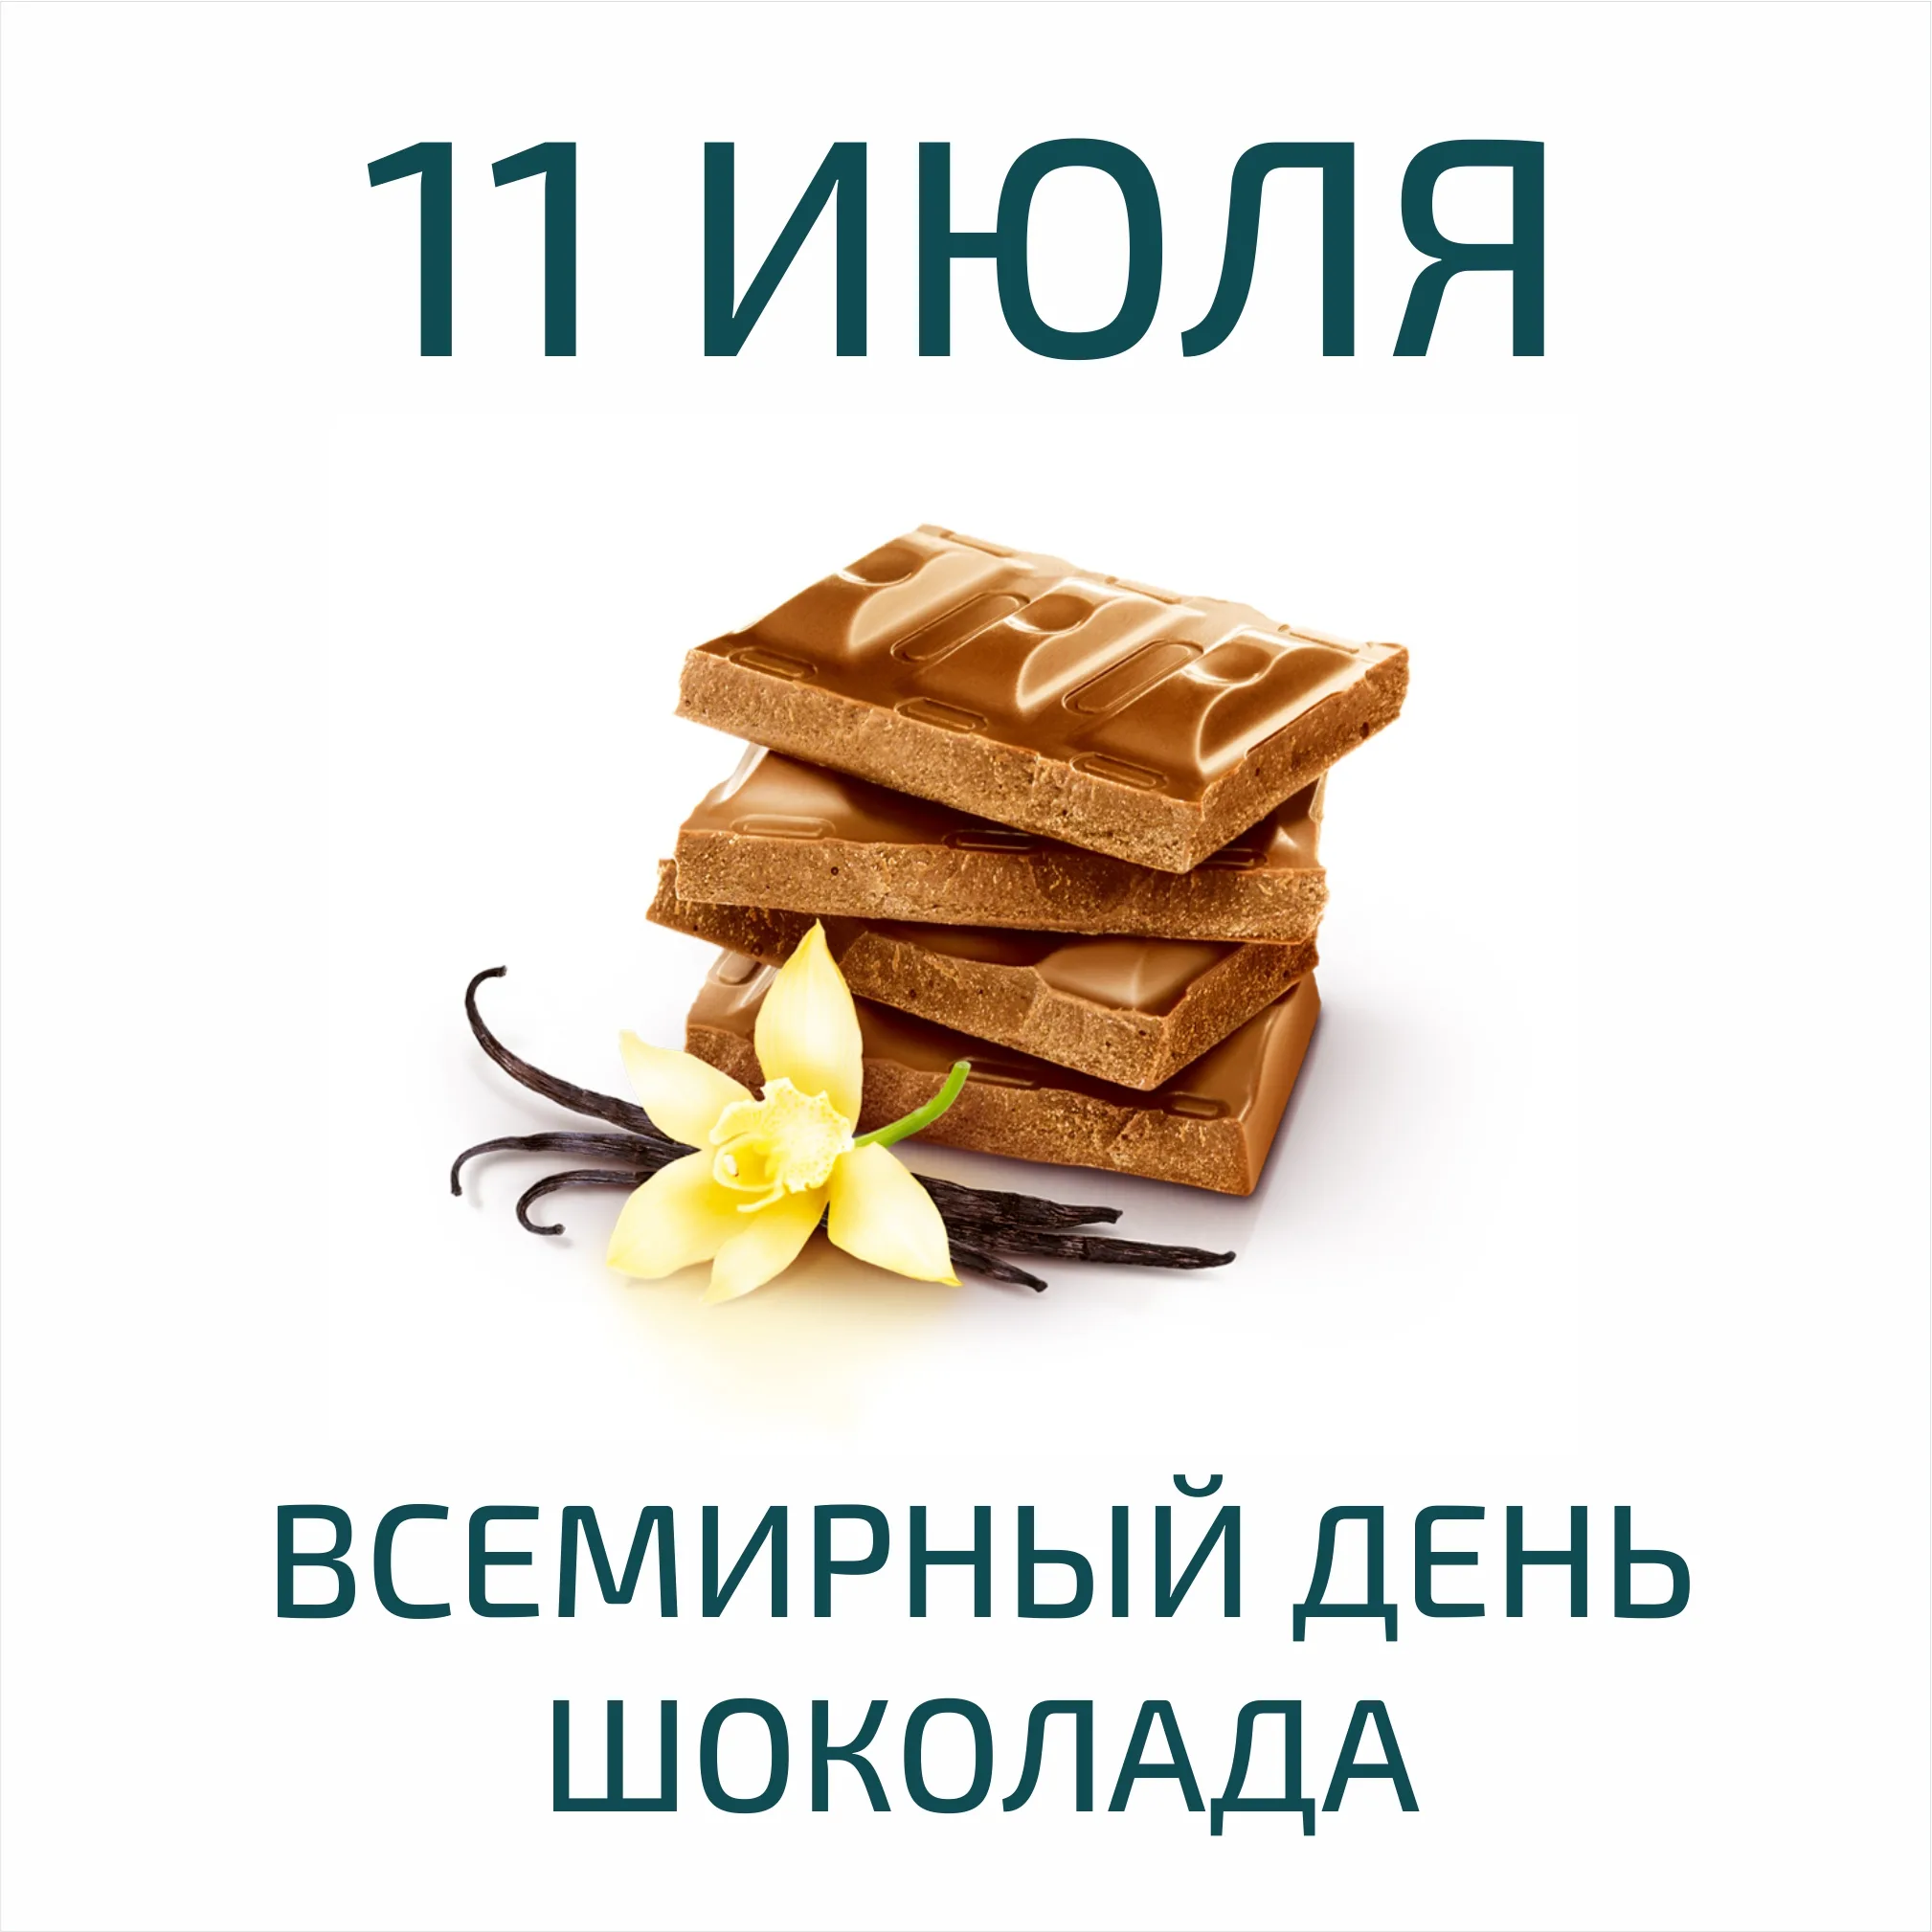 Фото Всемирный день шоколада #70